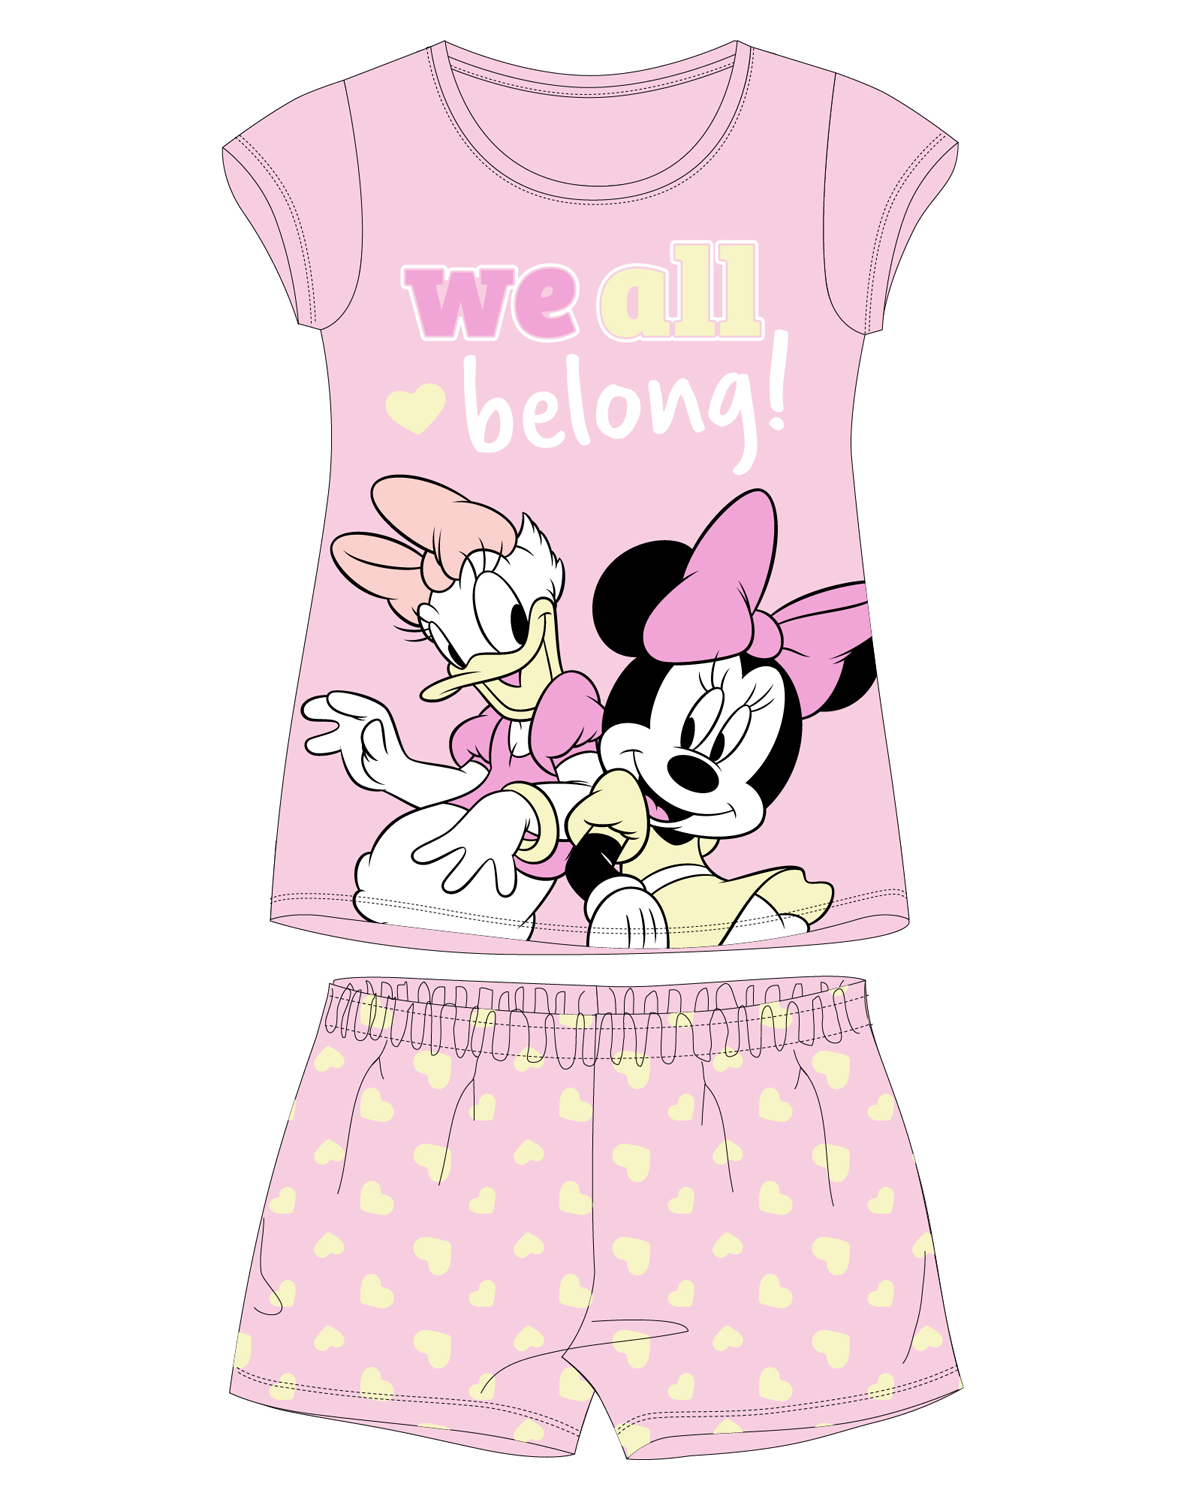 Minnie Mouse - licence Dívčí pyžamo - Minnie Mouse 5204B339W, světle růžová Barva: Růžová světlejší, Velikost: 98